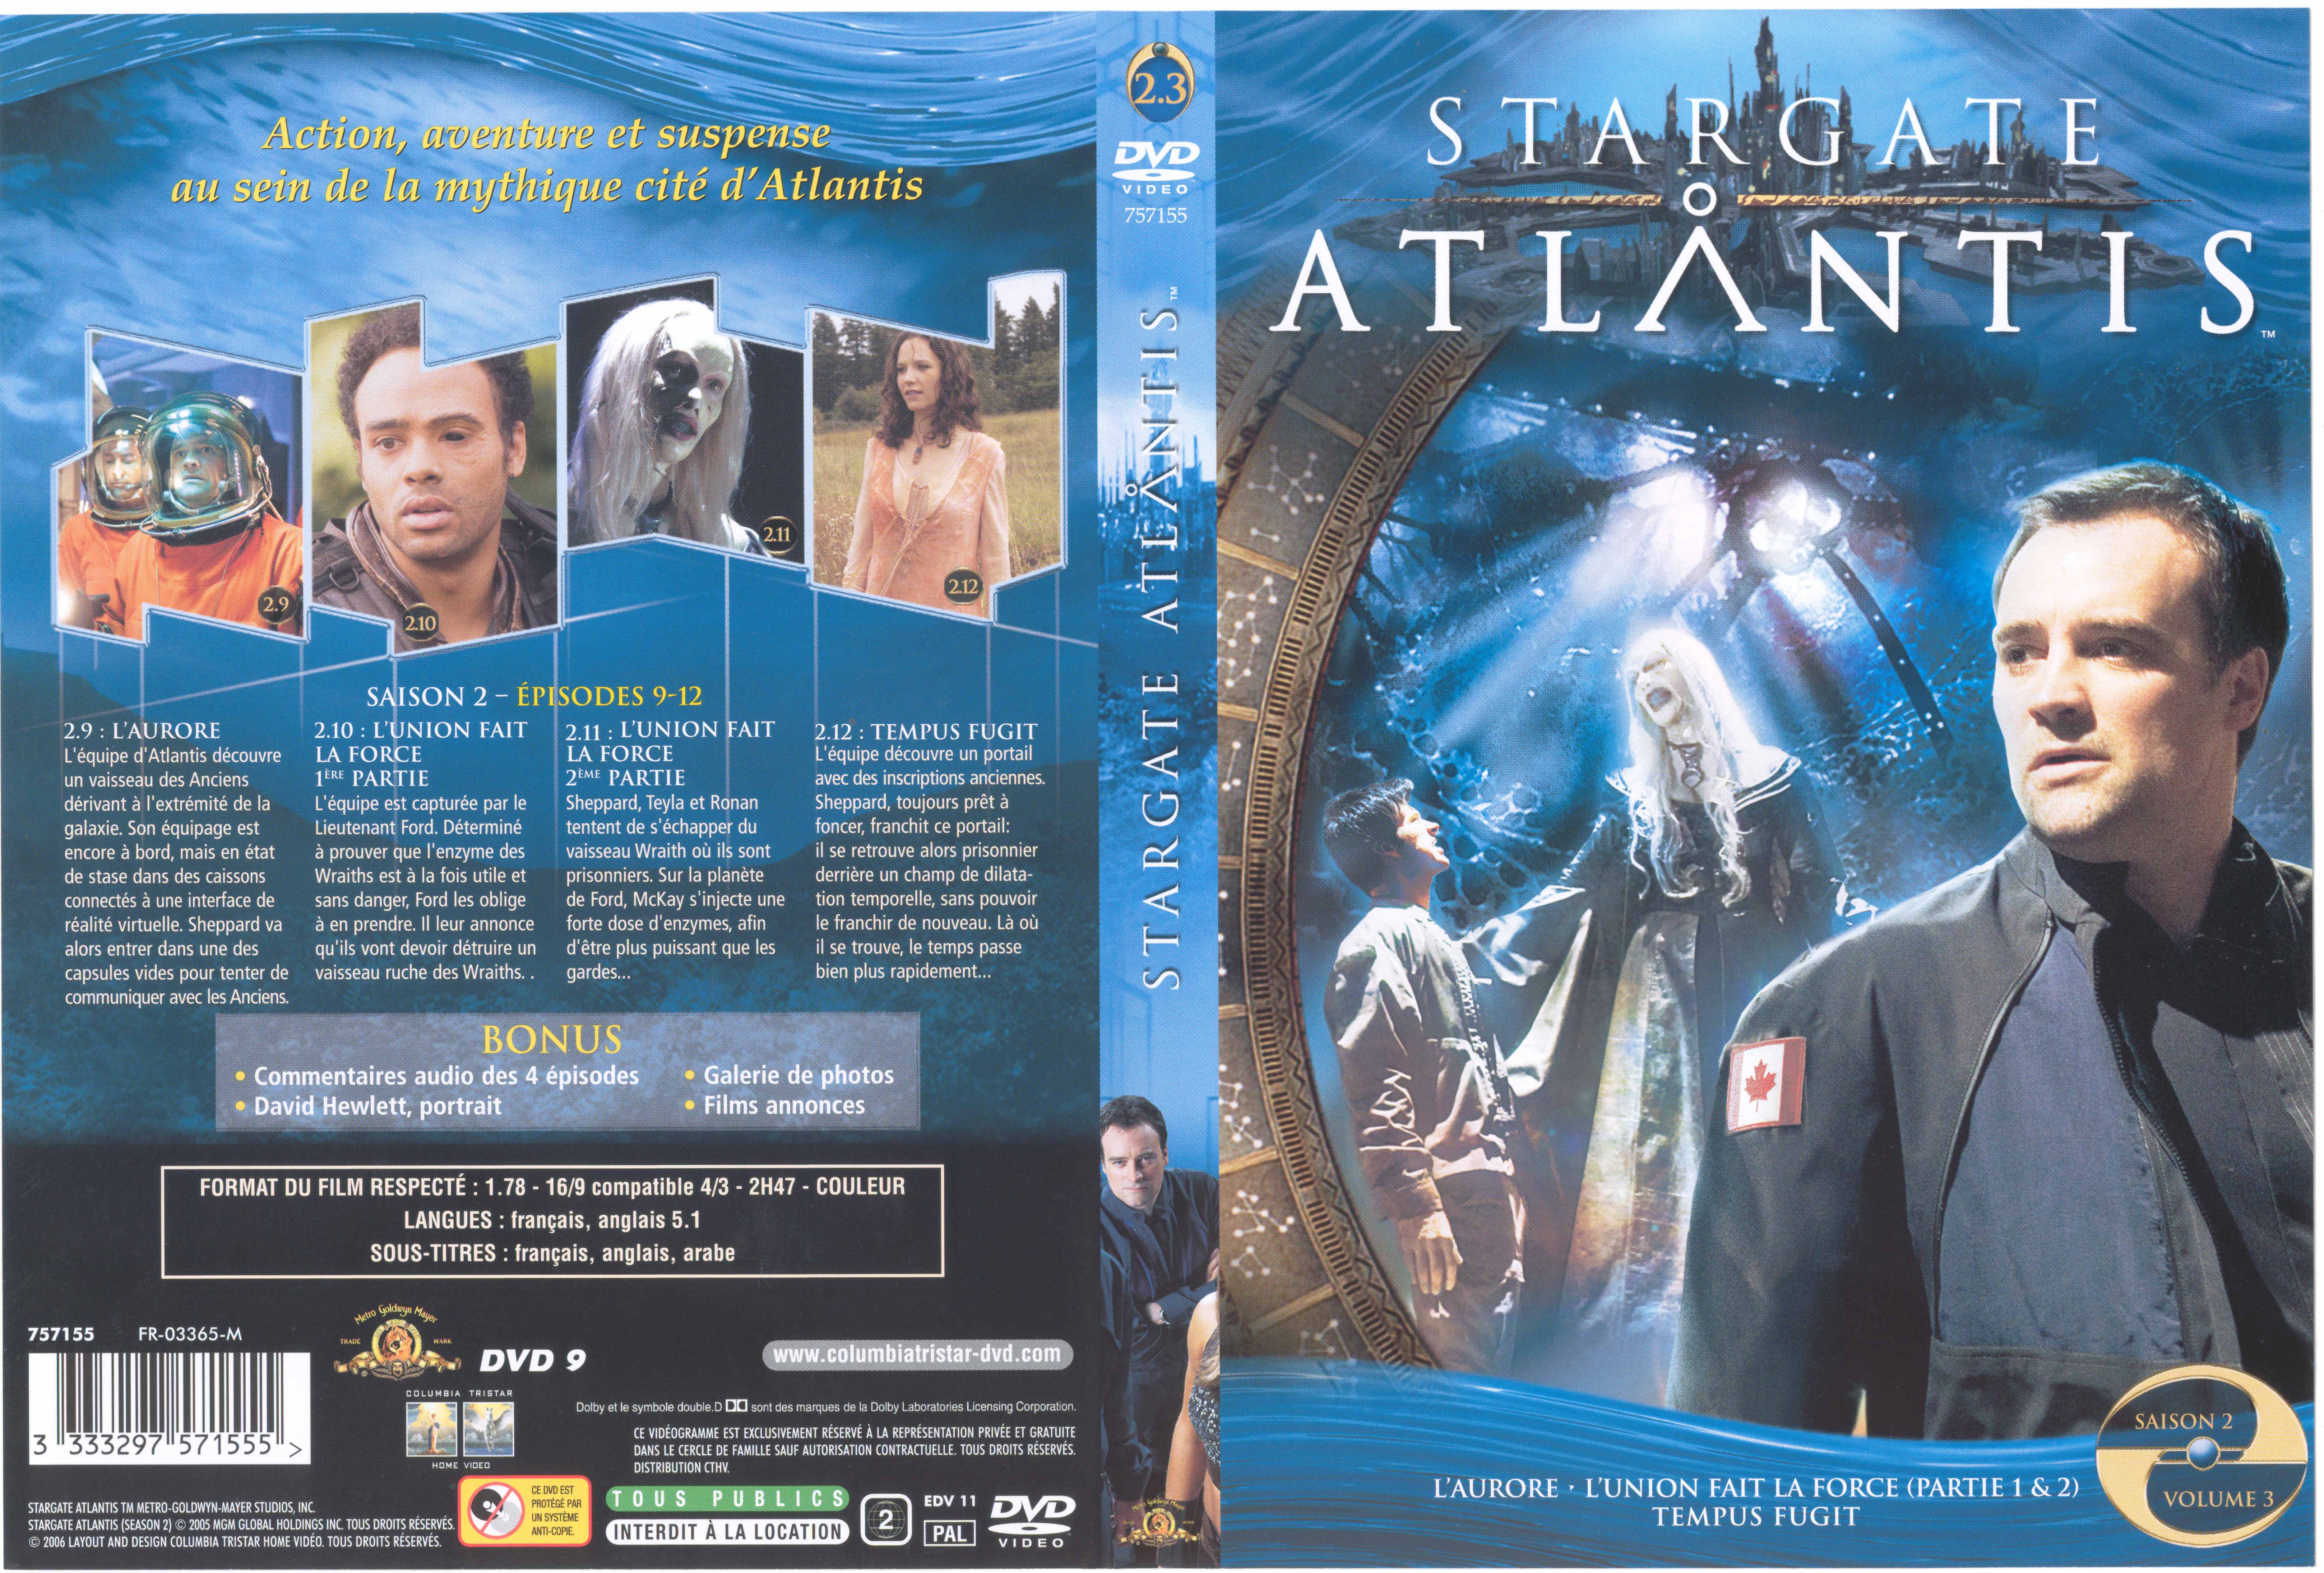 Jaquette DVD Stargate Atlantis saison 2 vol 3